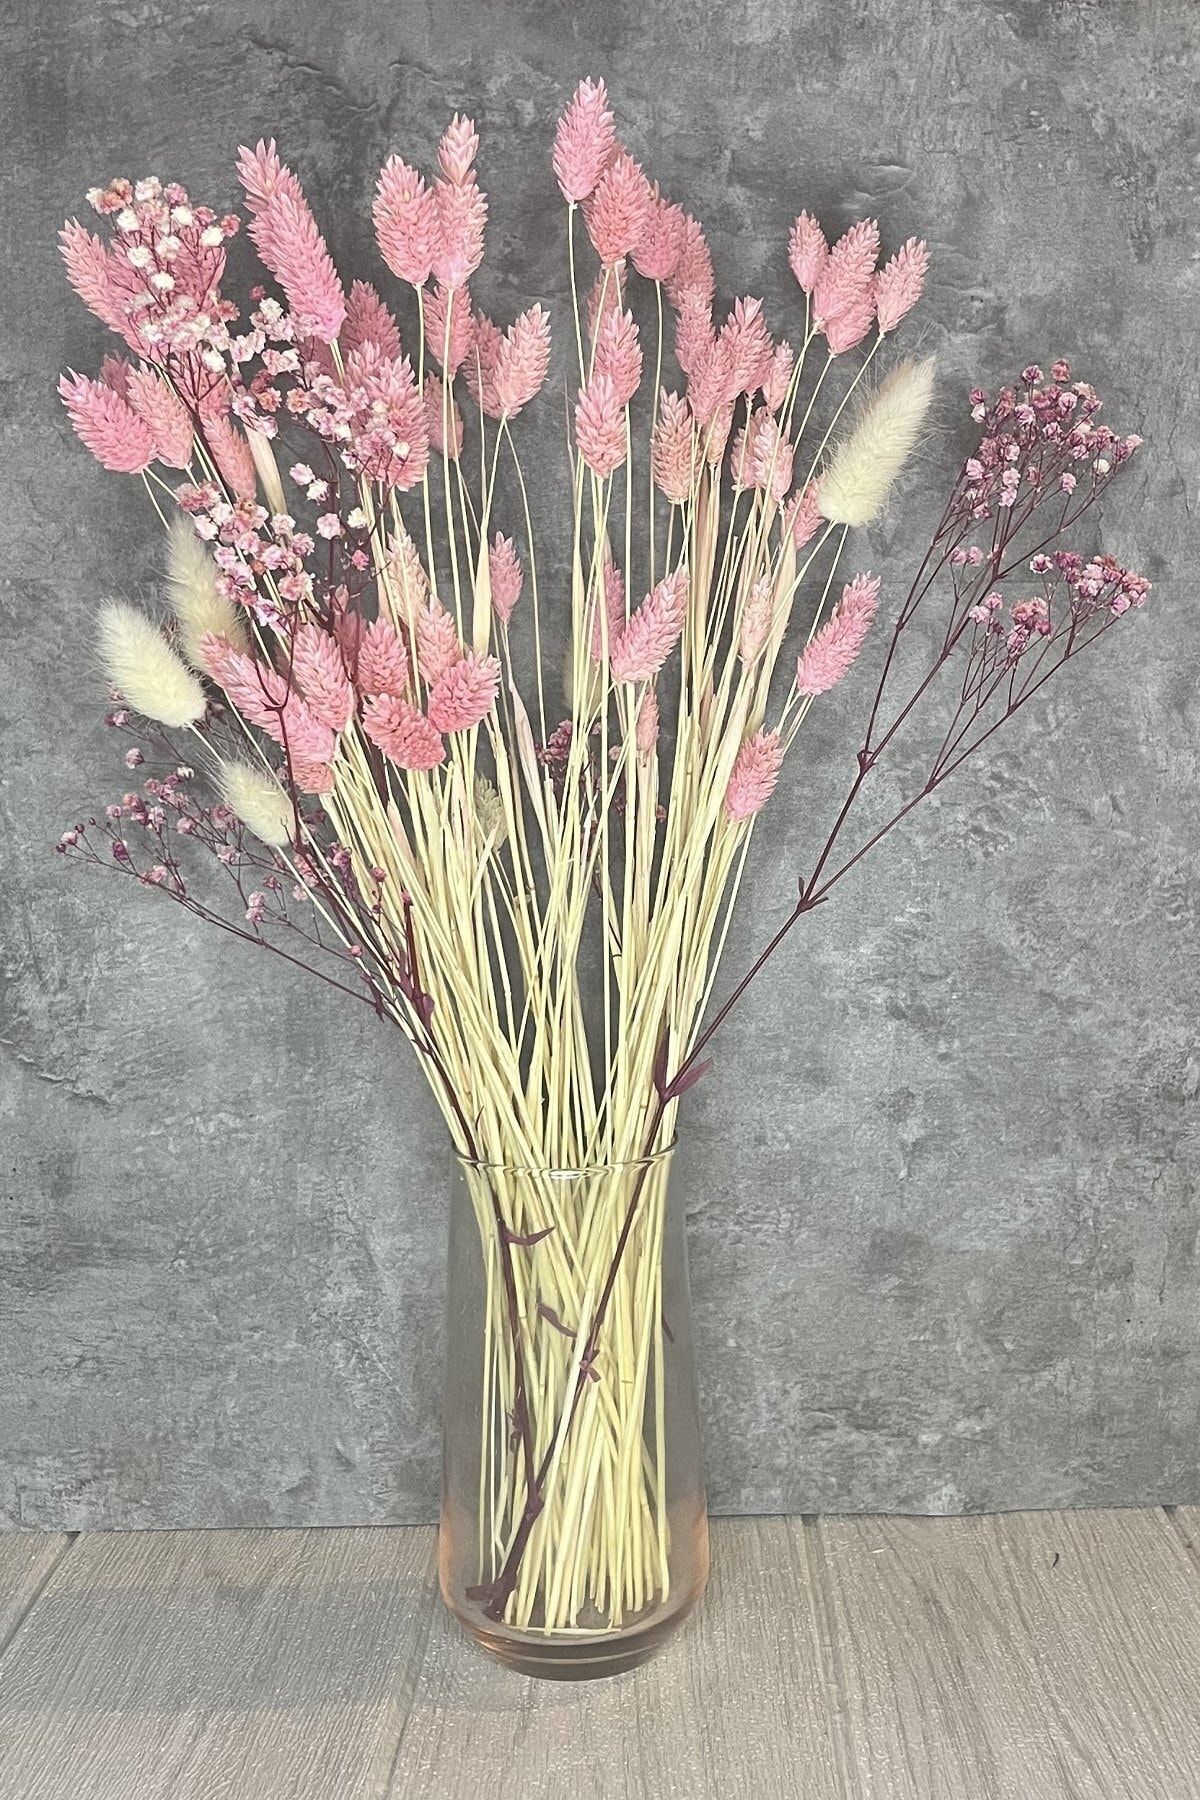 Goya Home Pink Lady - Pembe Cipso, Pamuk Otu, Kuş Otu Aranjmanı Şoklanmış Kuru Çiçek